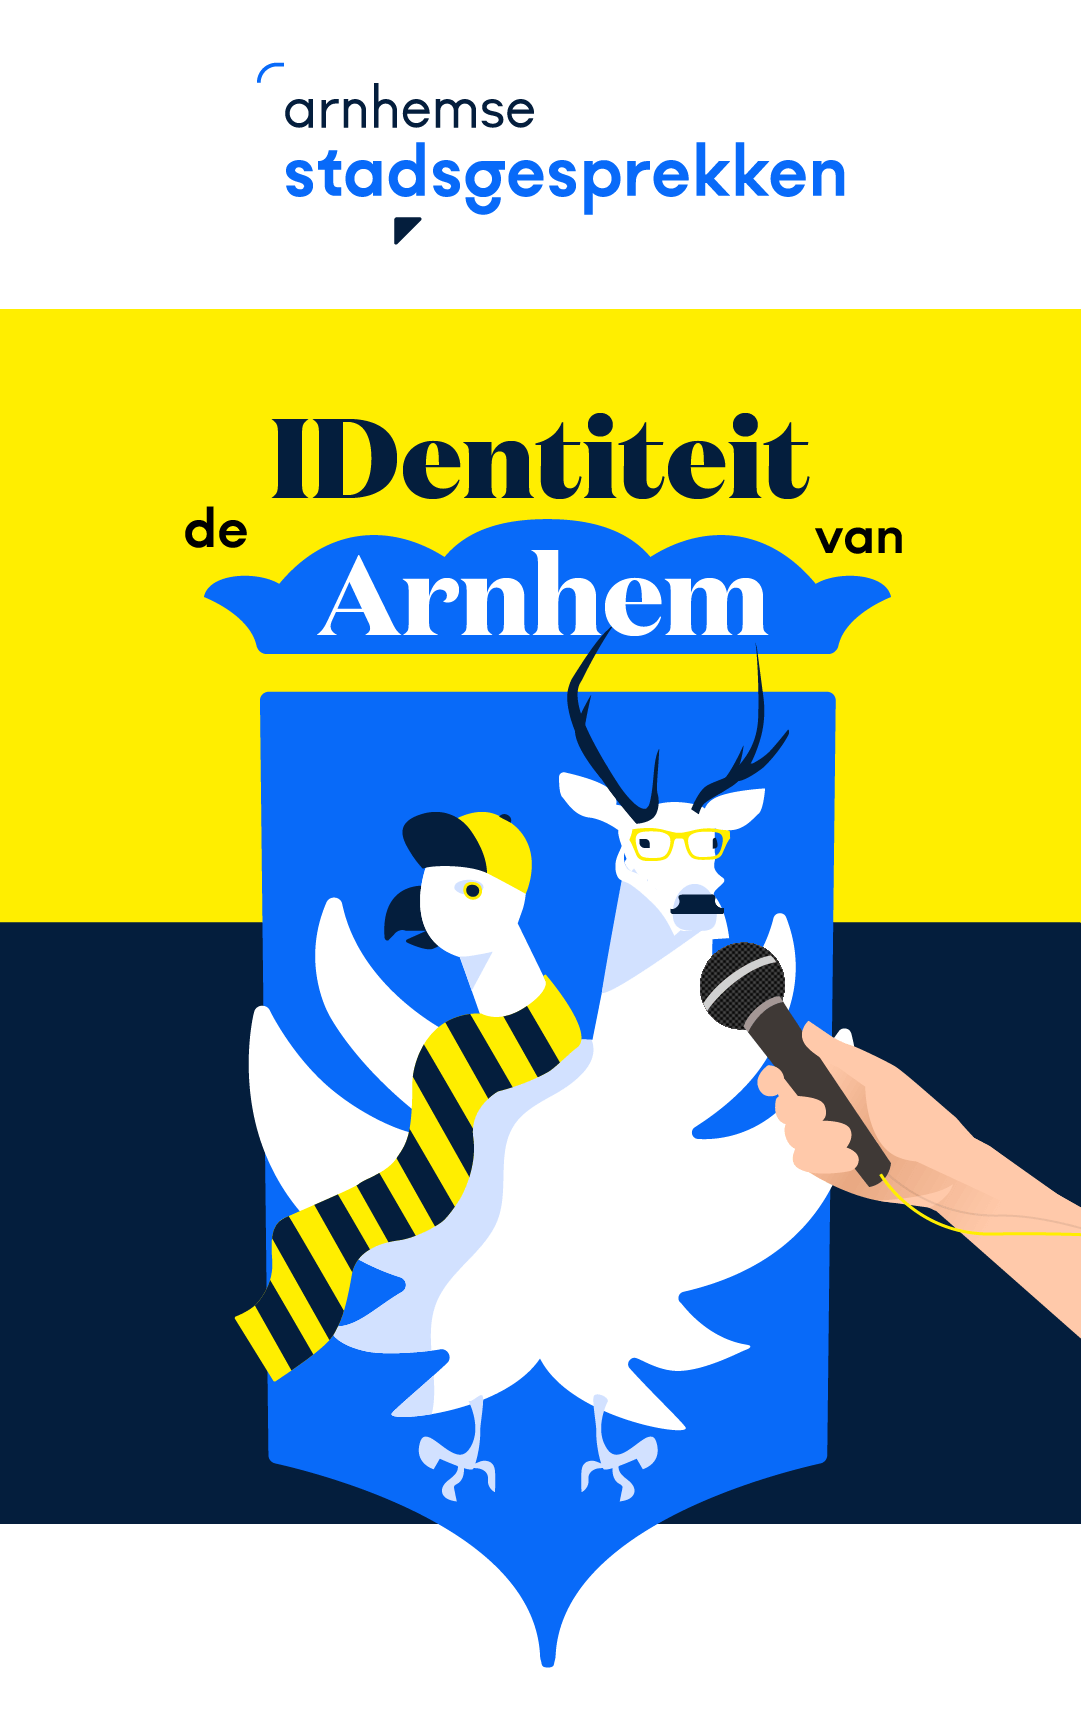 De IDentiteit van Arnhem